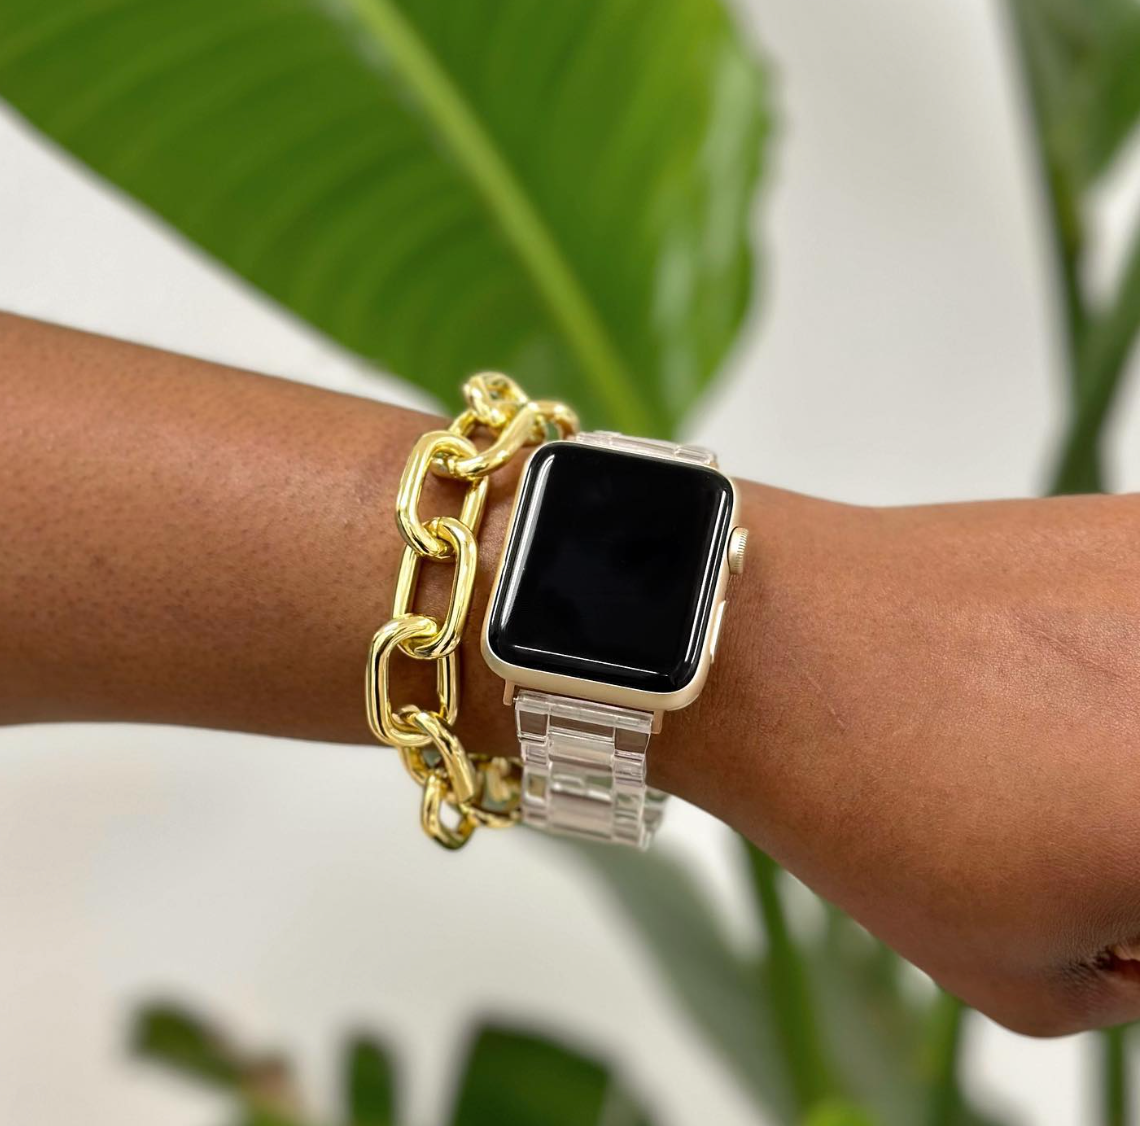 Apple Watch Fashion 101: Making Tech Look Stylish - MACHETE